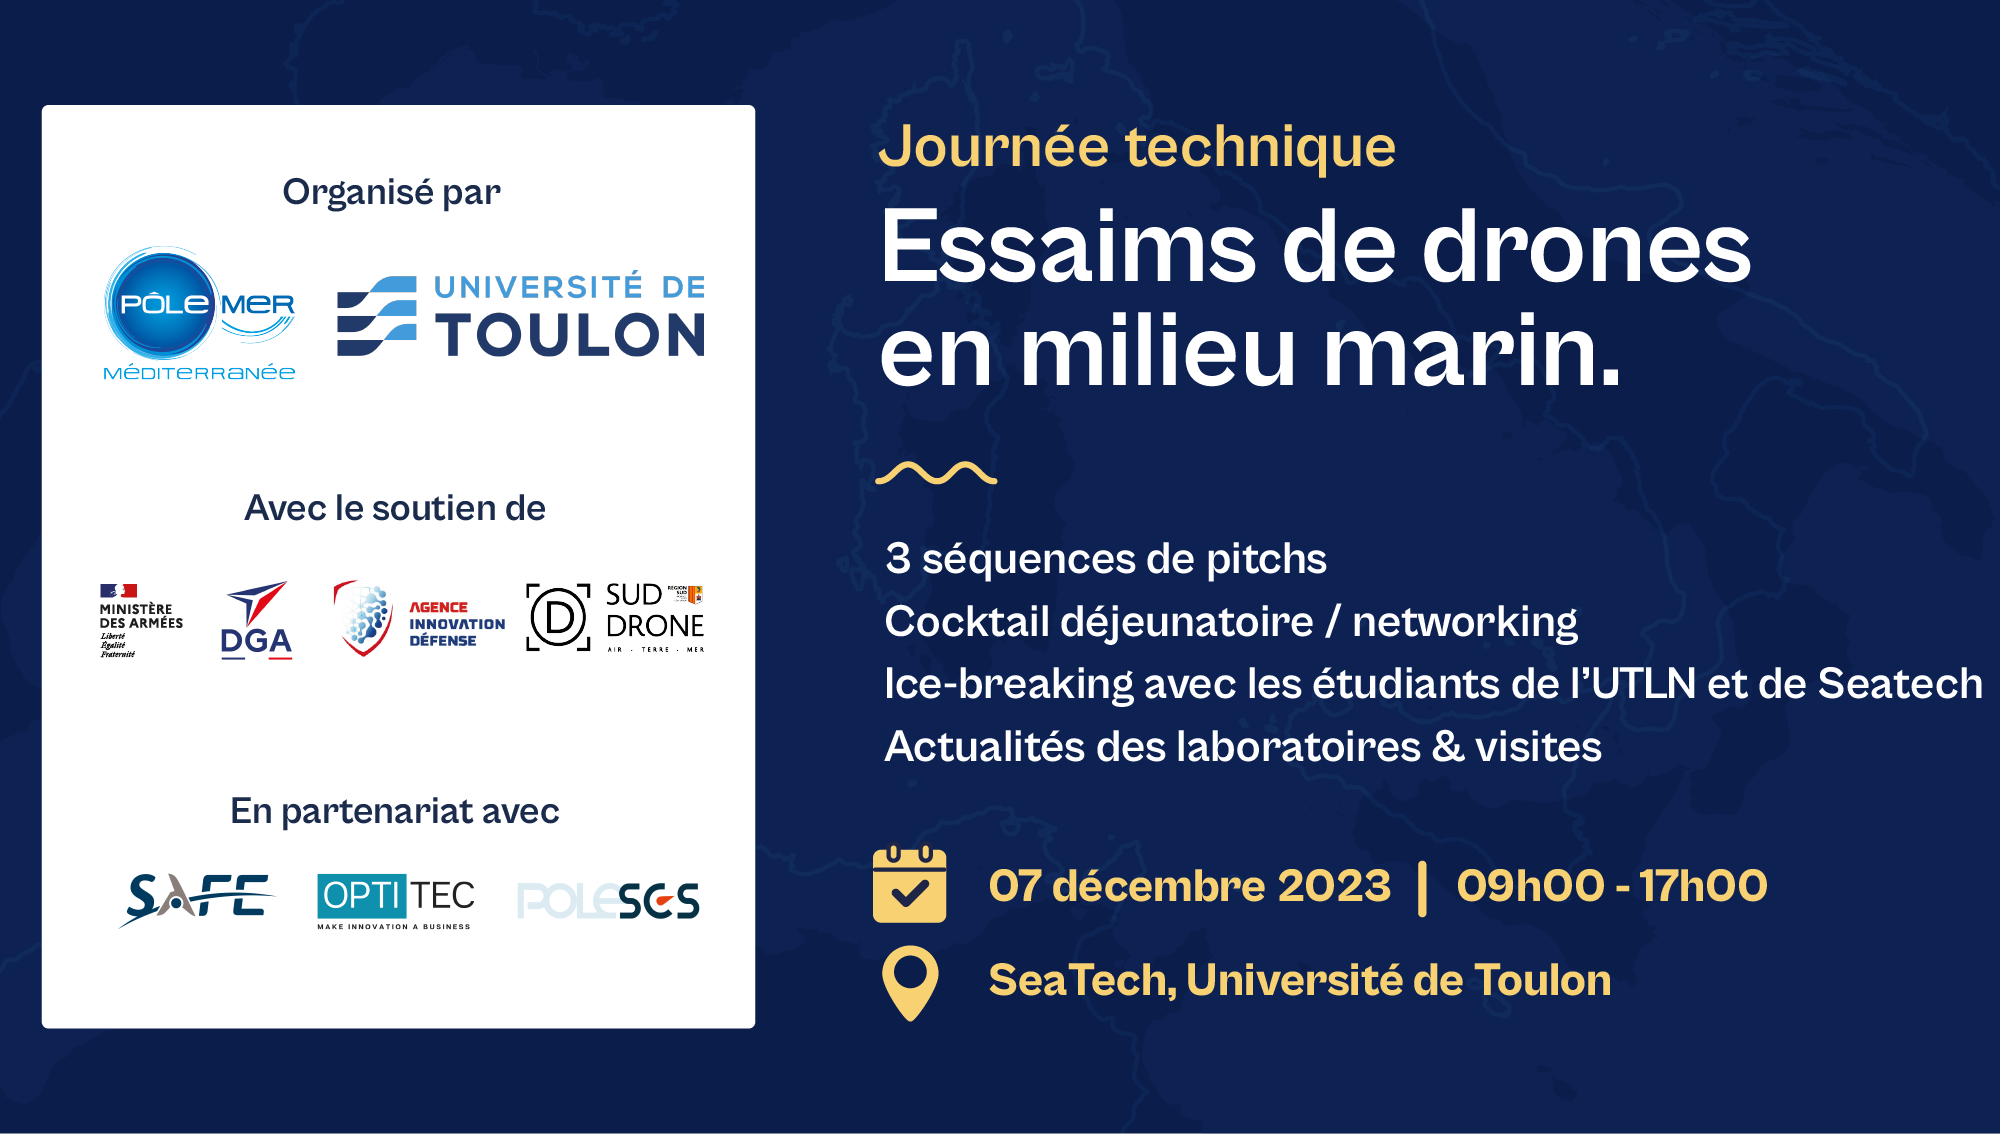 Journée technique "Essaims de drones en milieu marin"